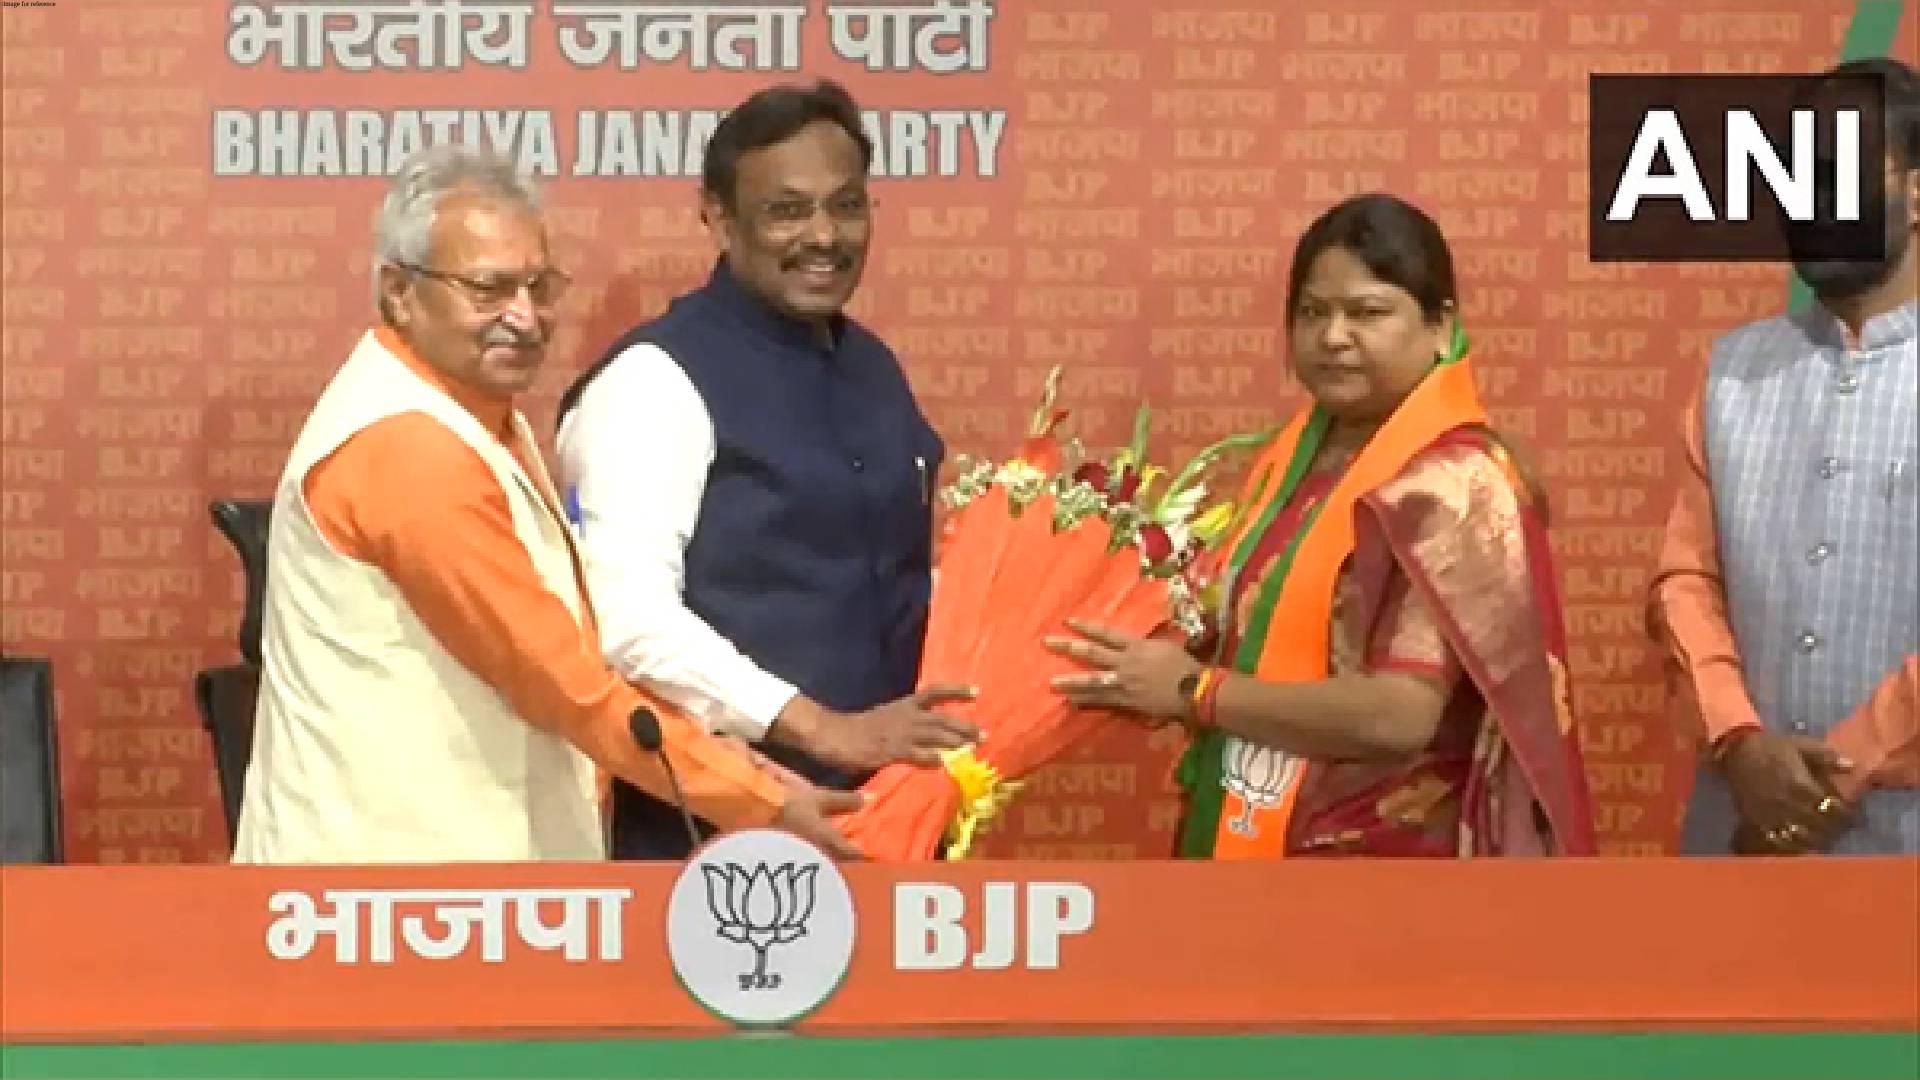 Jama MLA and sister-in-law of former Jharkhand CM Hemant Soren- Sita Soren joins BJP